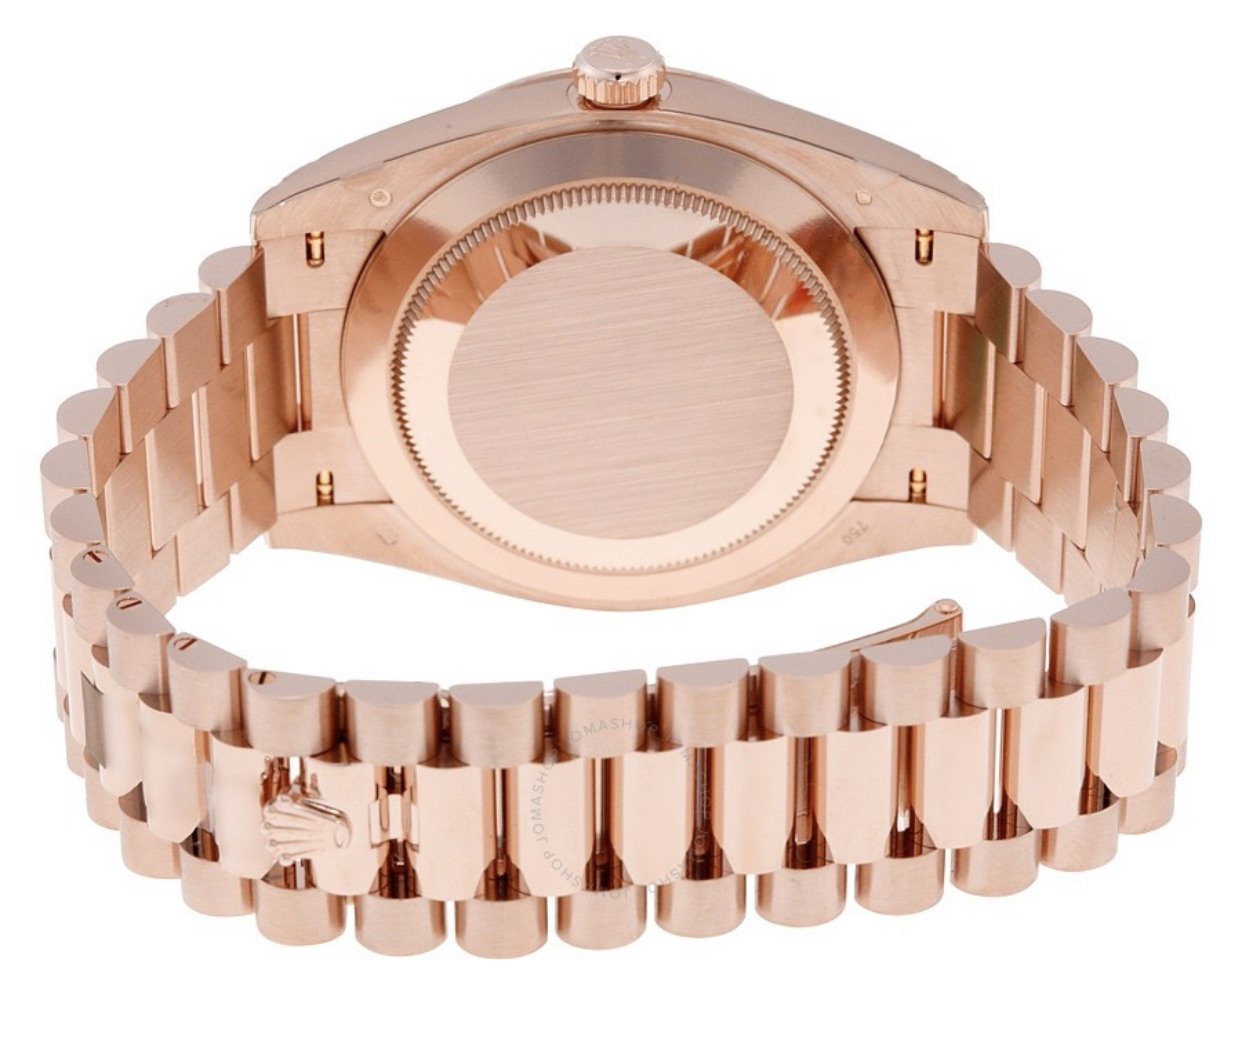 Best Swiss Clone Replica Rolex Day-Date 40 Everose gold Chocolate Dial Watch m228235-0002 - Replica Swiss Clones Watches